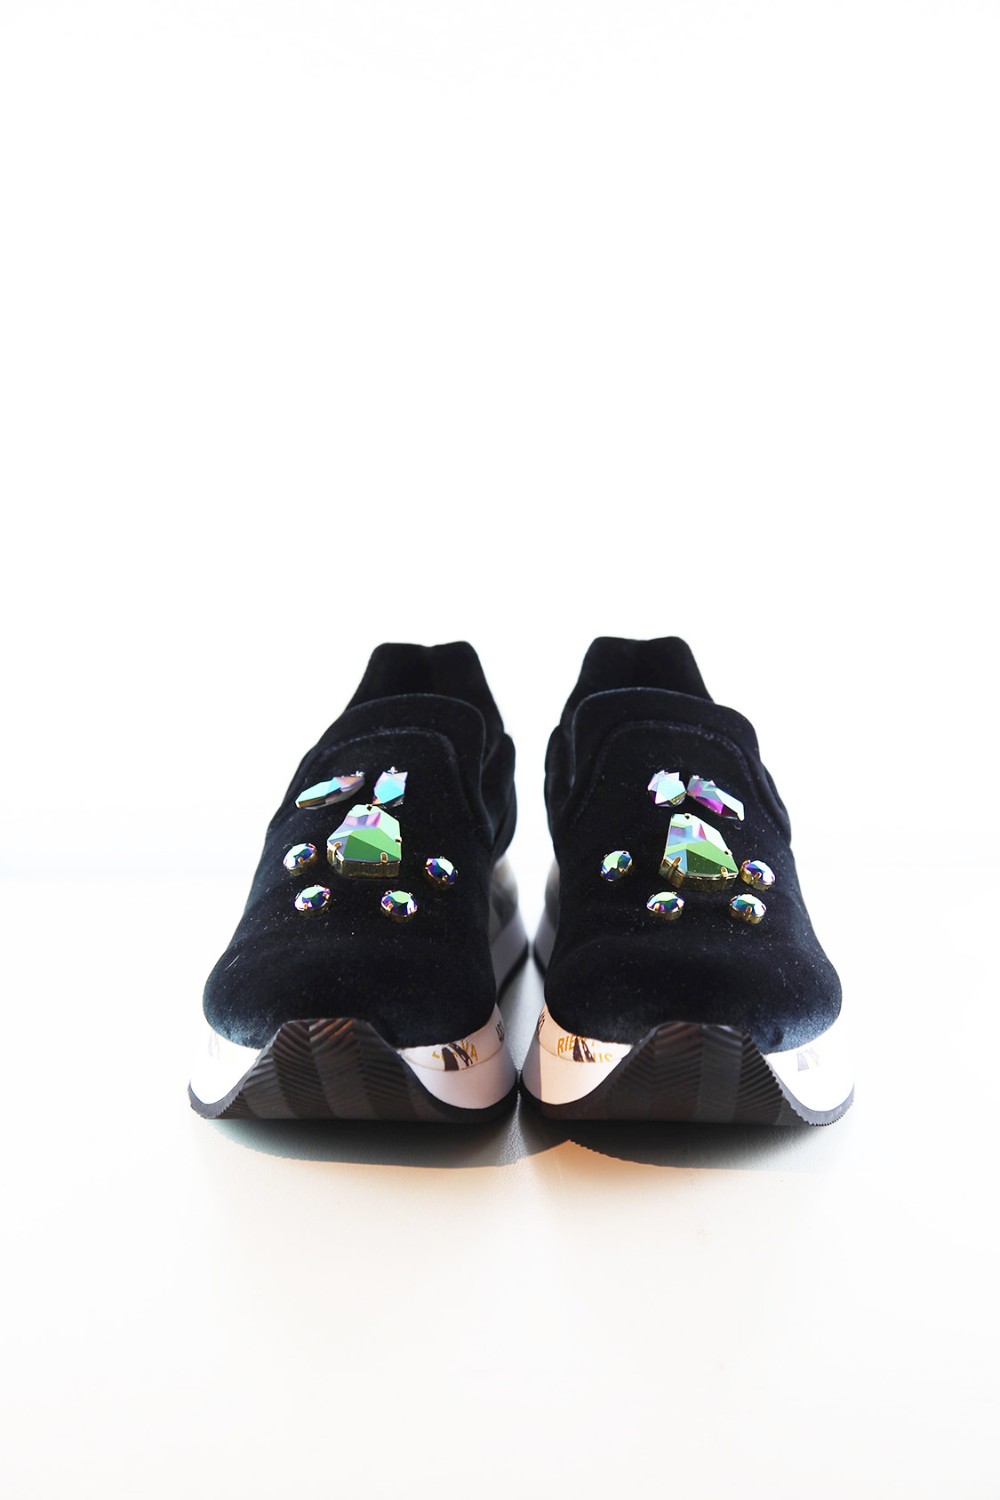 shop Premiata White Sales Scarpe: Sneakers Takai Premiata White mocassino, in velluto con pietre iridescenti. Zeppa di 3 cm. number 752